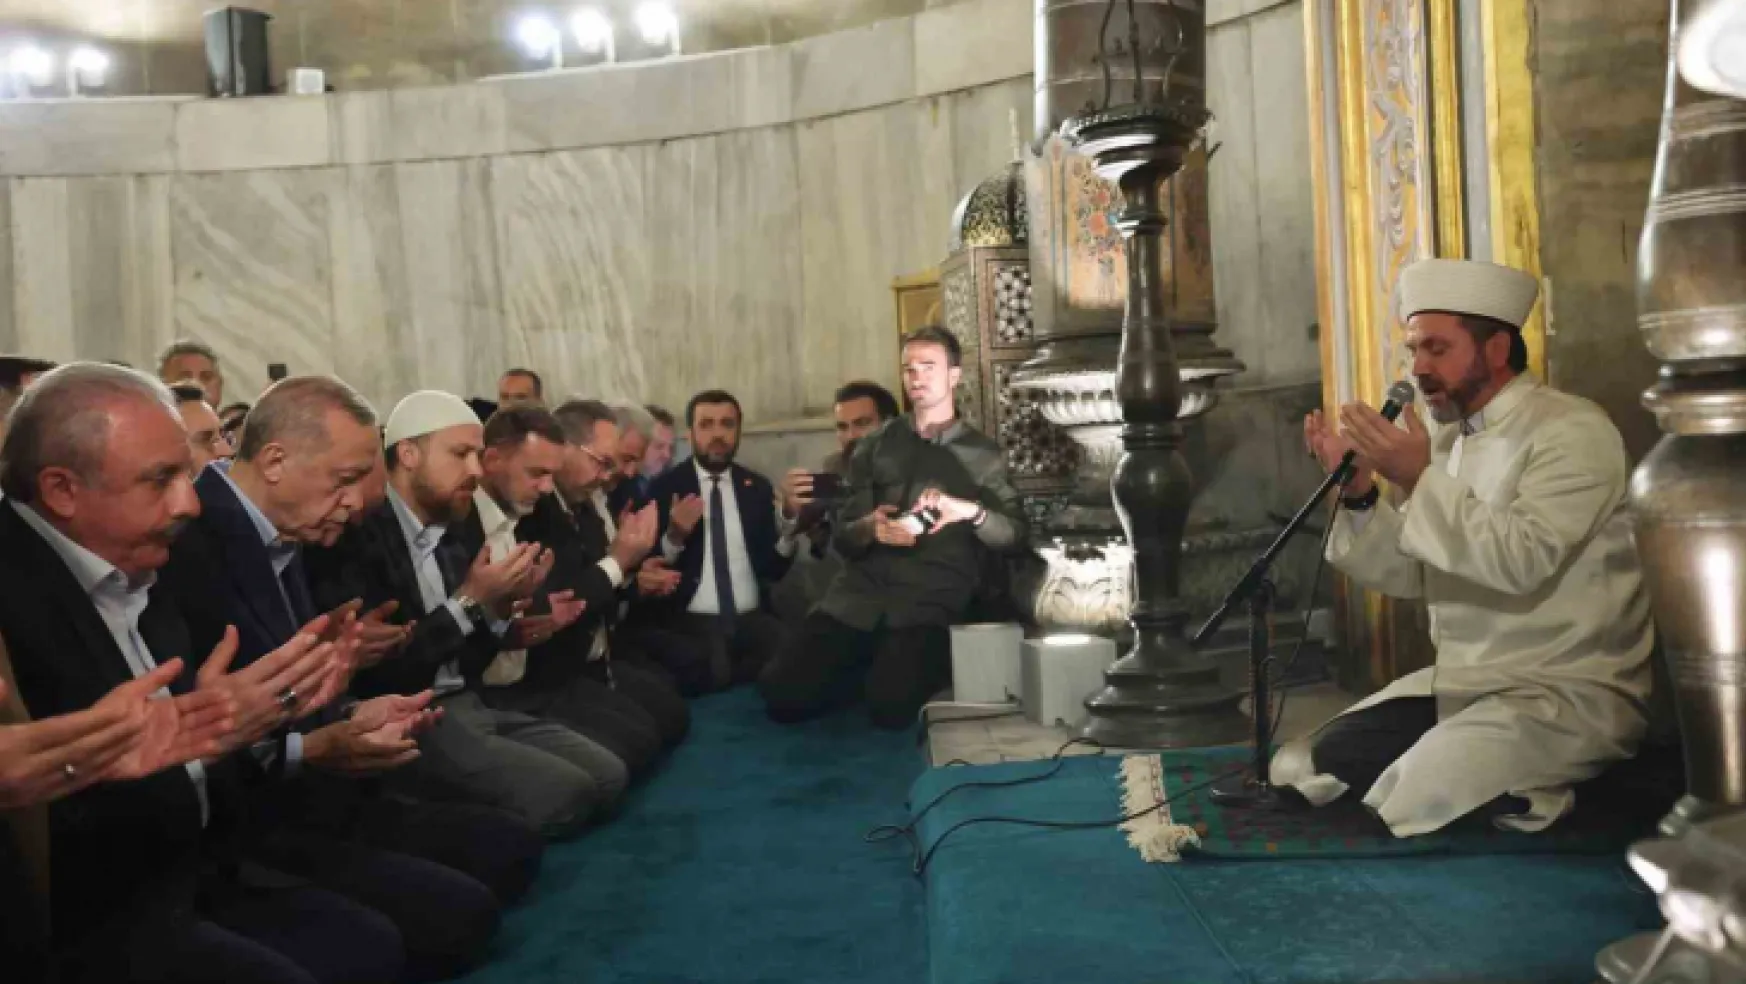 Cumhurbaşkanı Erdoğan yatsı namazını Ayasofya Camii'nde kıldı